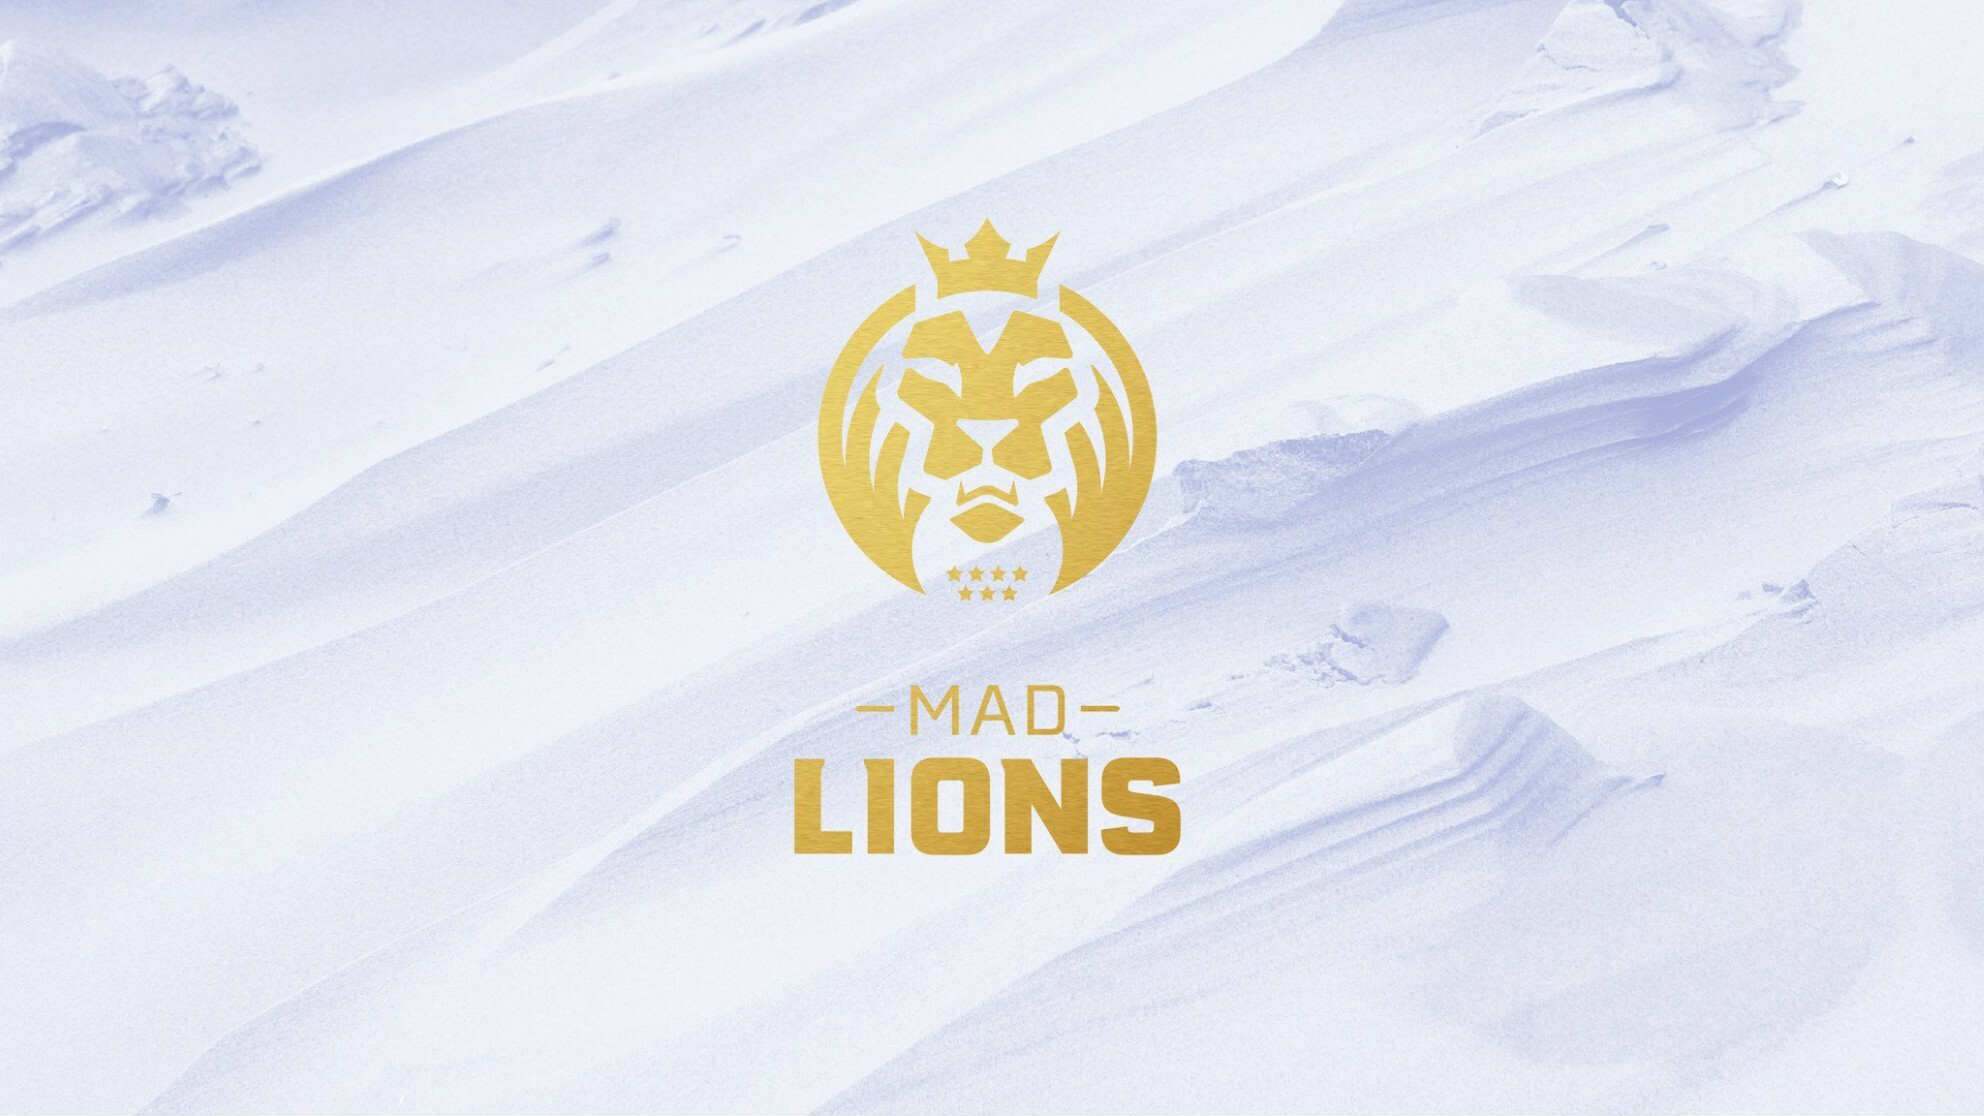 MAD Lions по CS:GO: история команды, игроки, особенности ставок